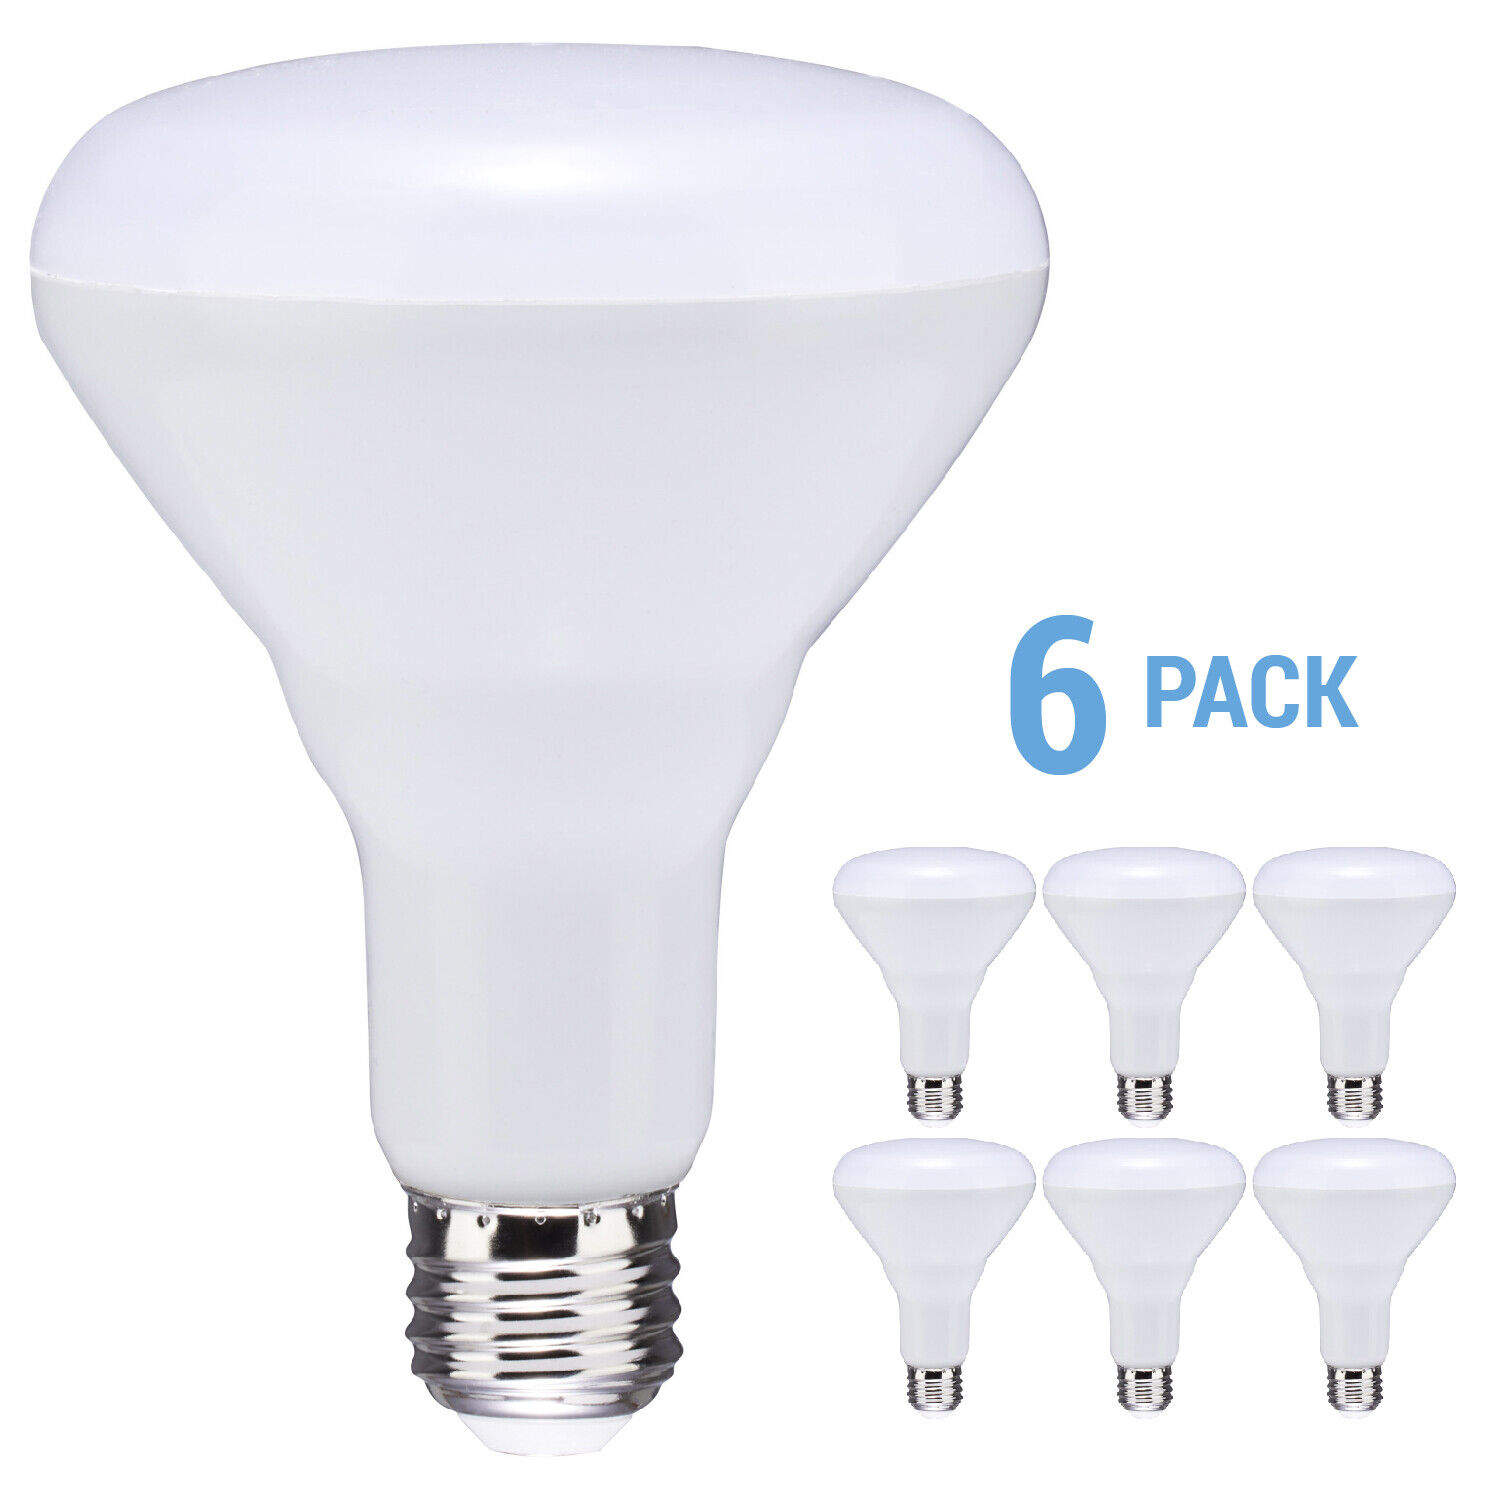 6 Pack BR30 LED 8.5W =65W 120V 700 Lumens Medium E26 Dimmable 2700K Warm White